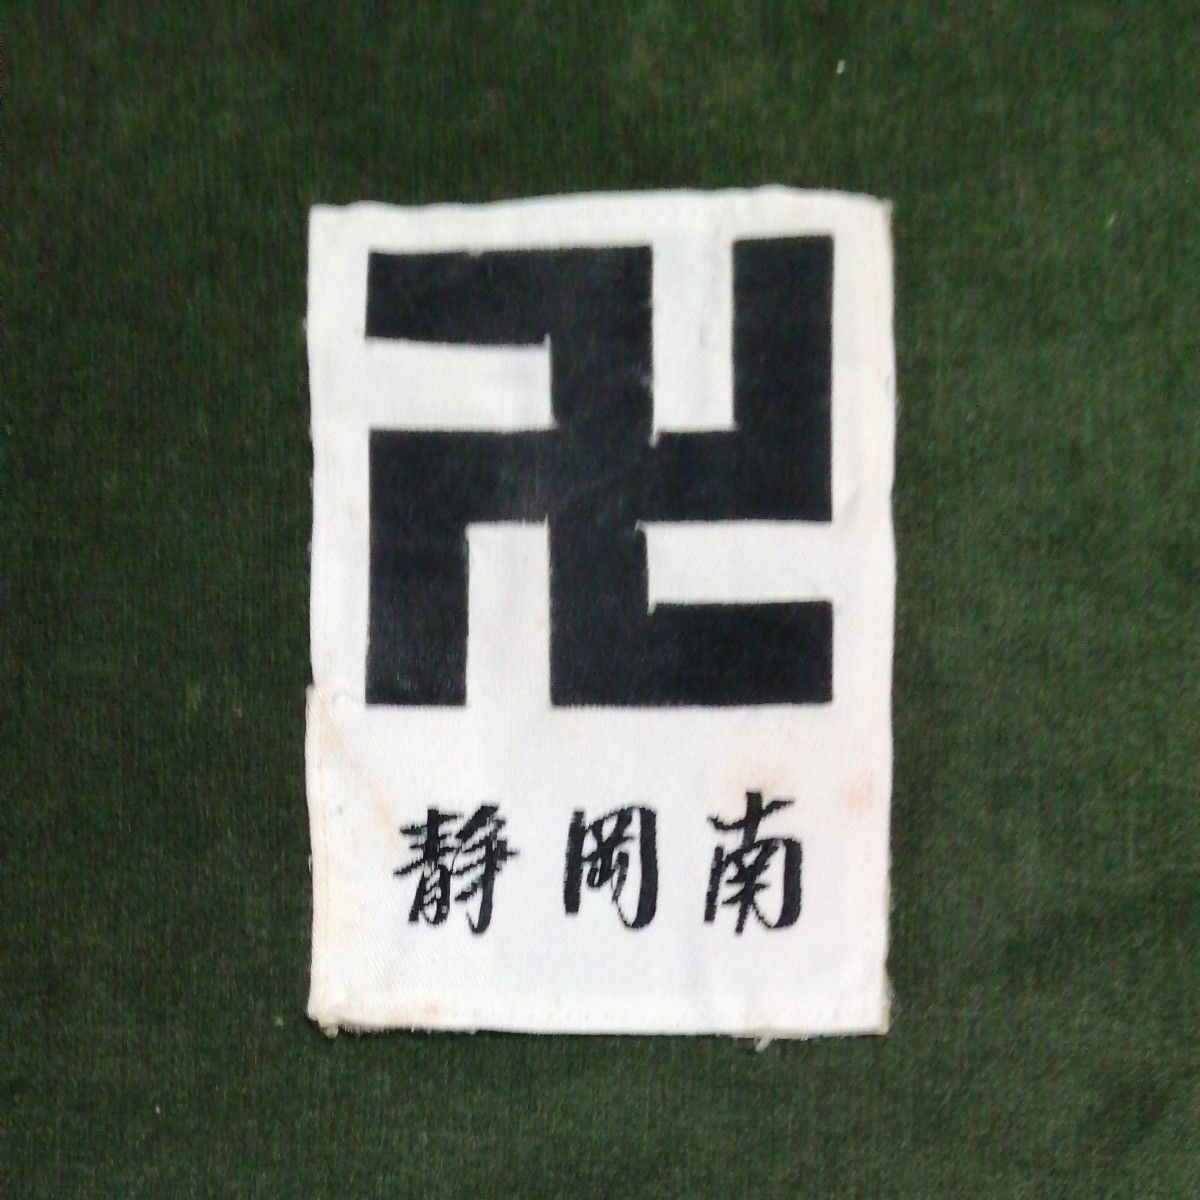 少林寺拳法 胸章卍